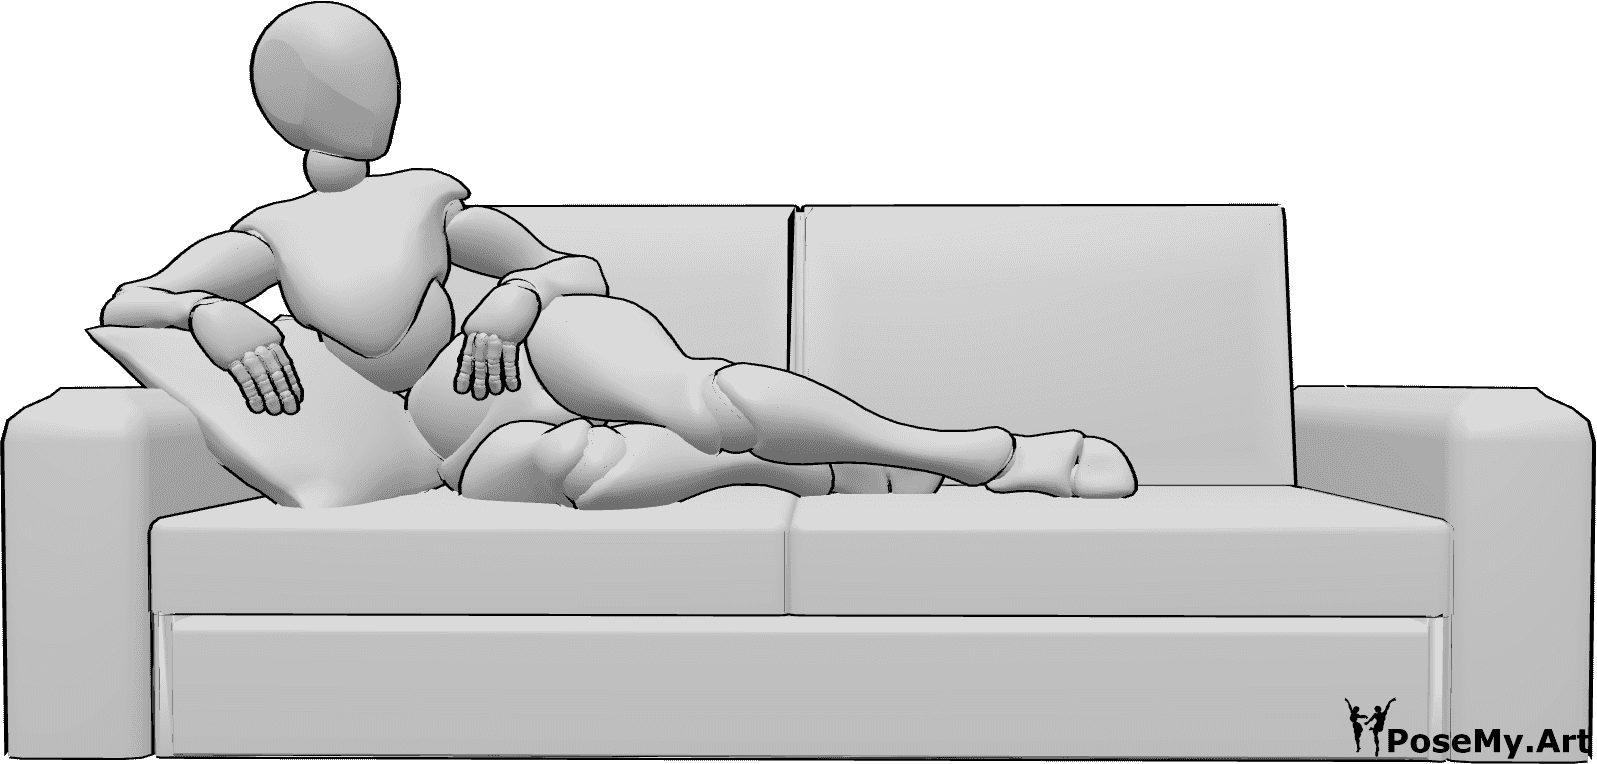 Référence des poses- Femme en position allongée confortable - La femme est confortablement allongée sur le canapé et regarde vers la gauche.